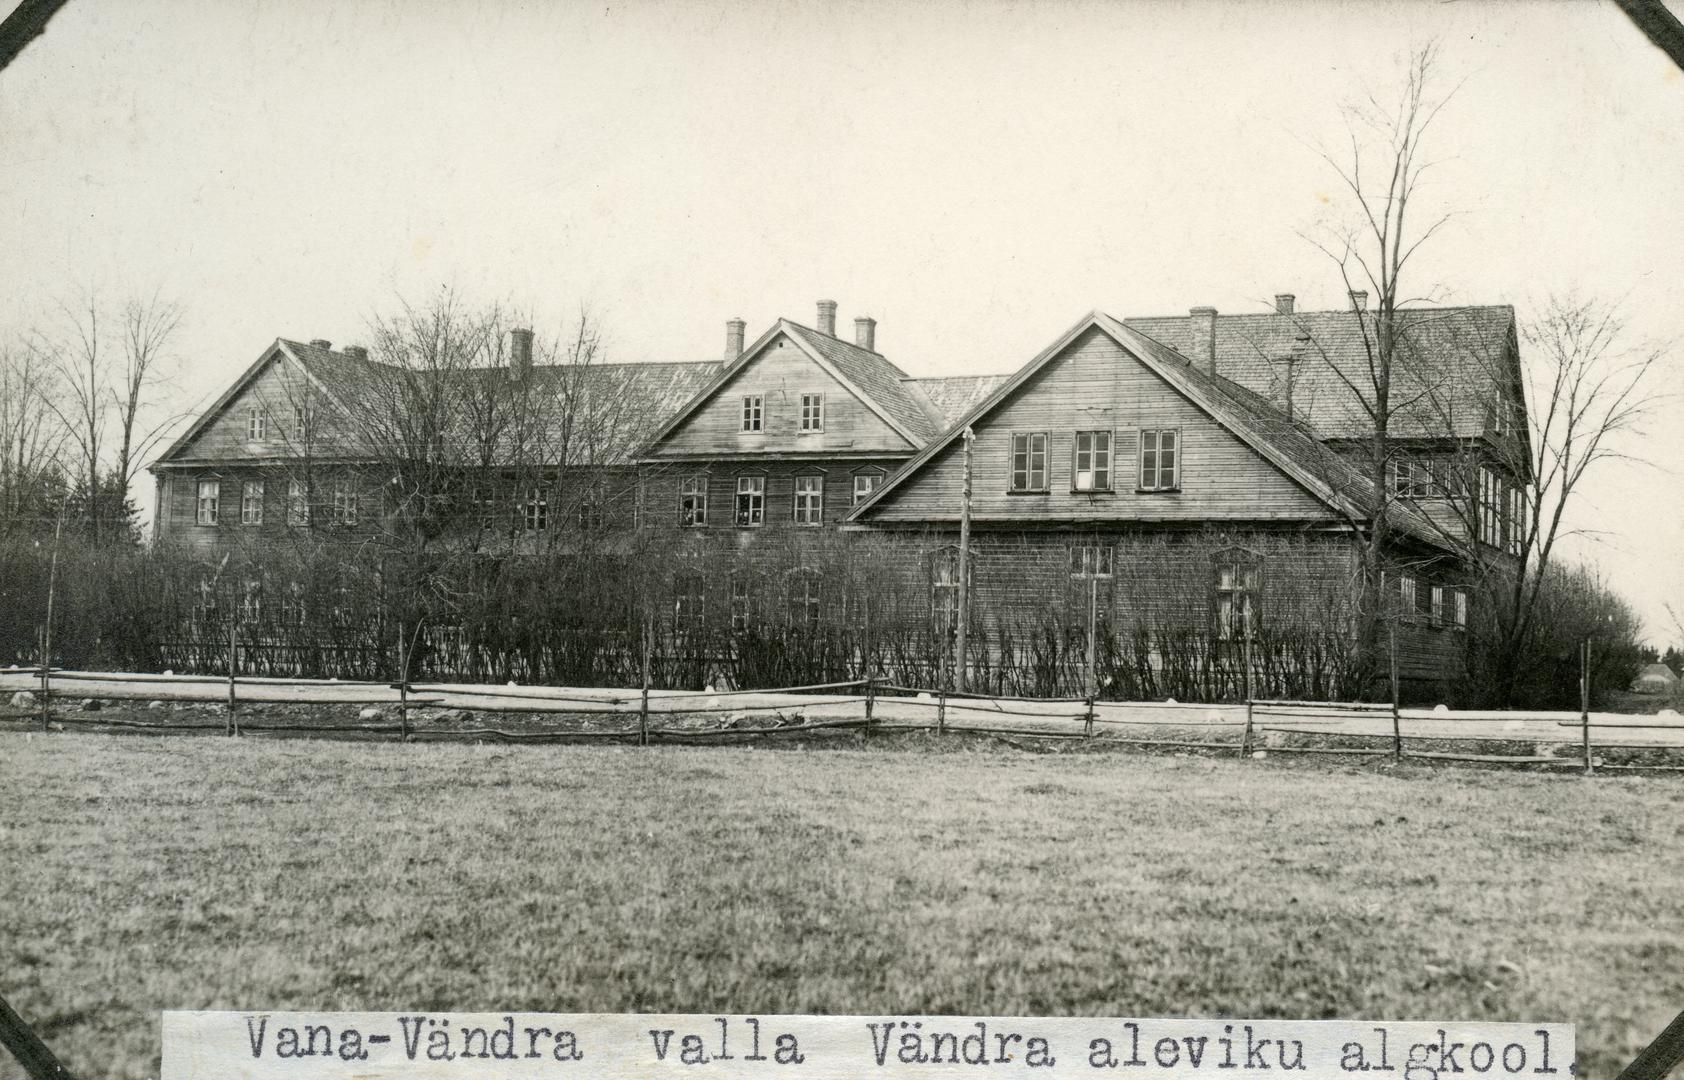 Vana-Vändra rural municipality Vändra aleviku 6-kl primary school building (1.-4. classes)